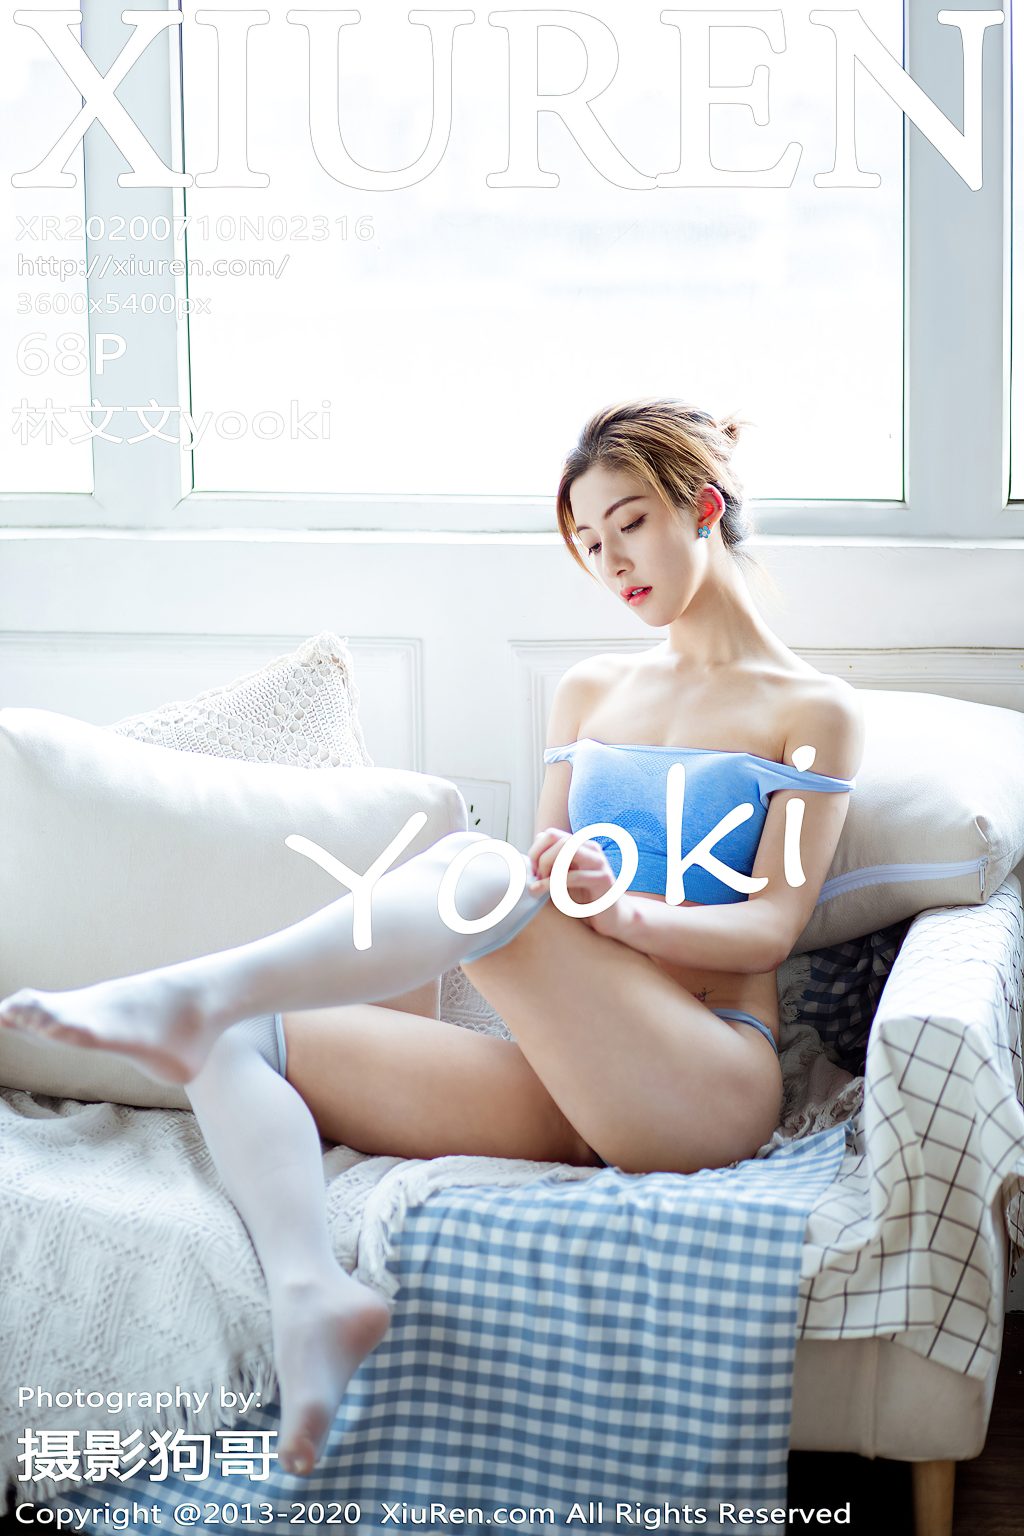 Watch sexy XIUREN No.2316: 林文文yooki photos